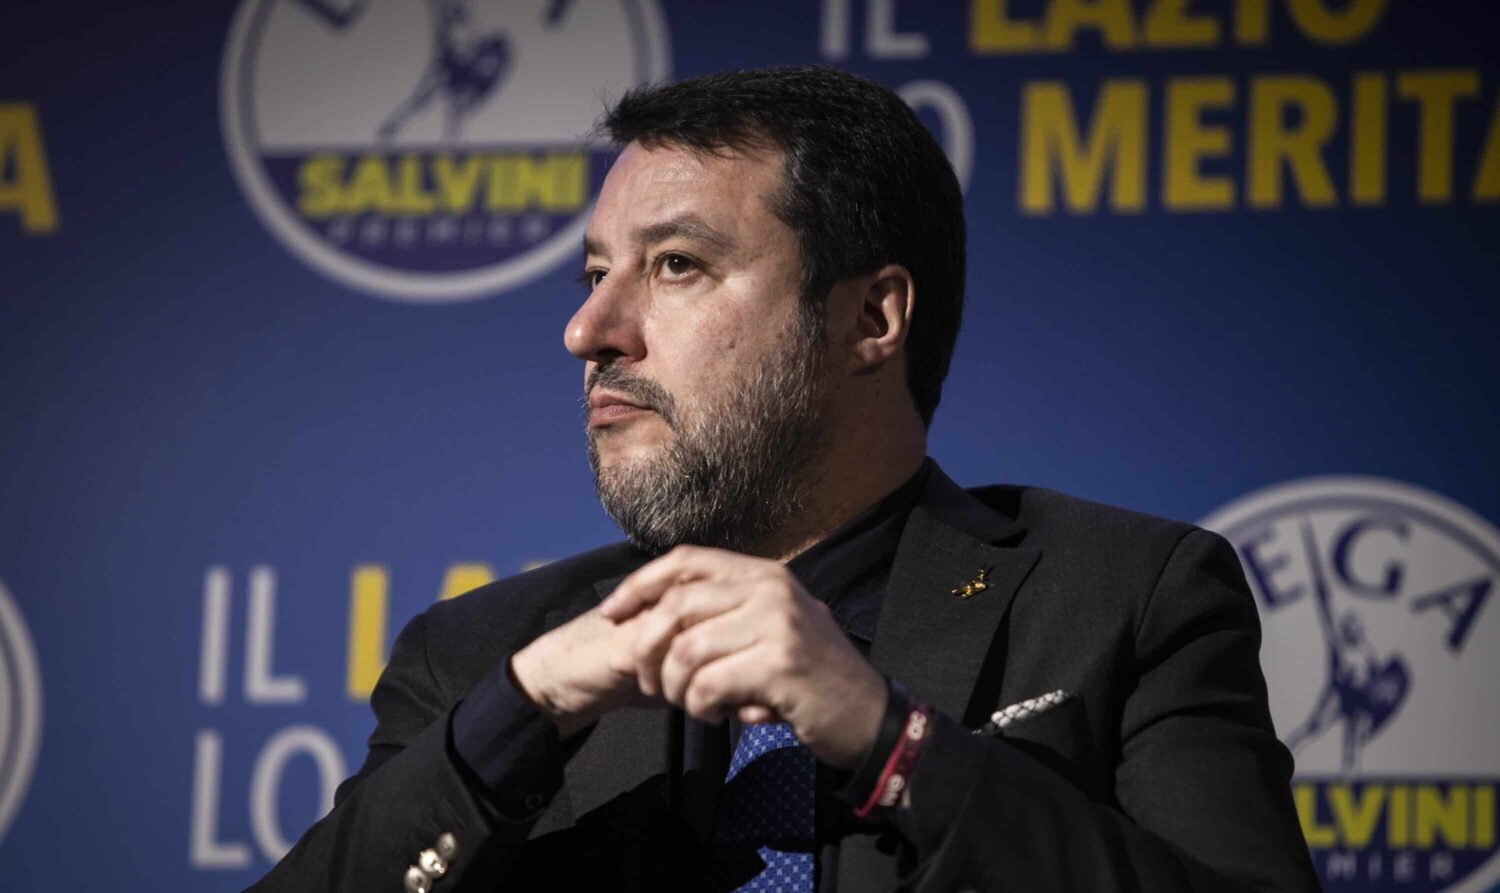 La Lega raccatta tutti, patto in Sicilia con Lombardo. Salvini e il nuovo alleato gongolano: “Insieme valiamo come FI e FdI”